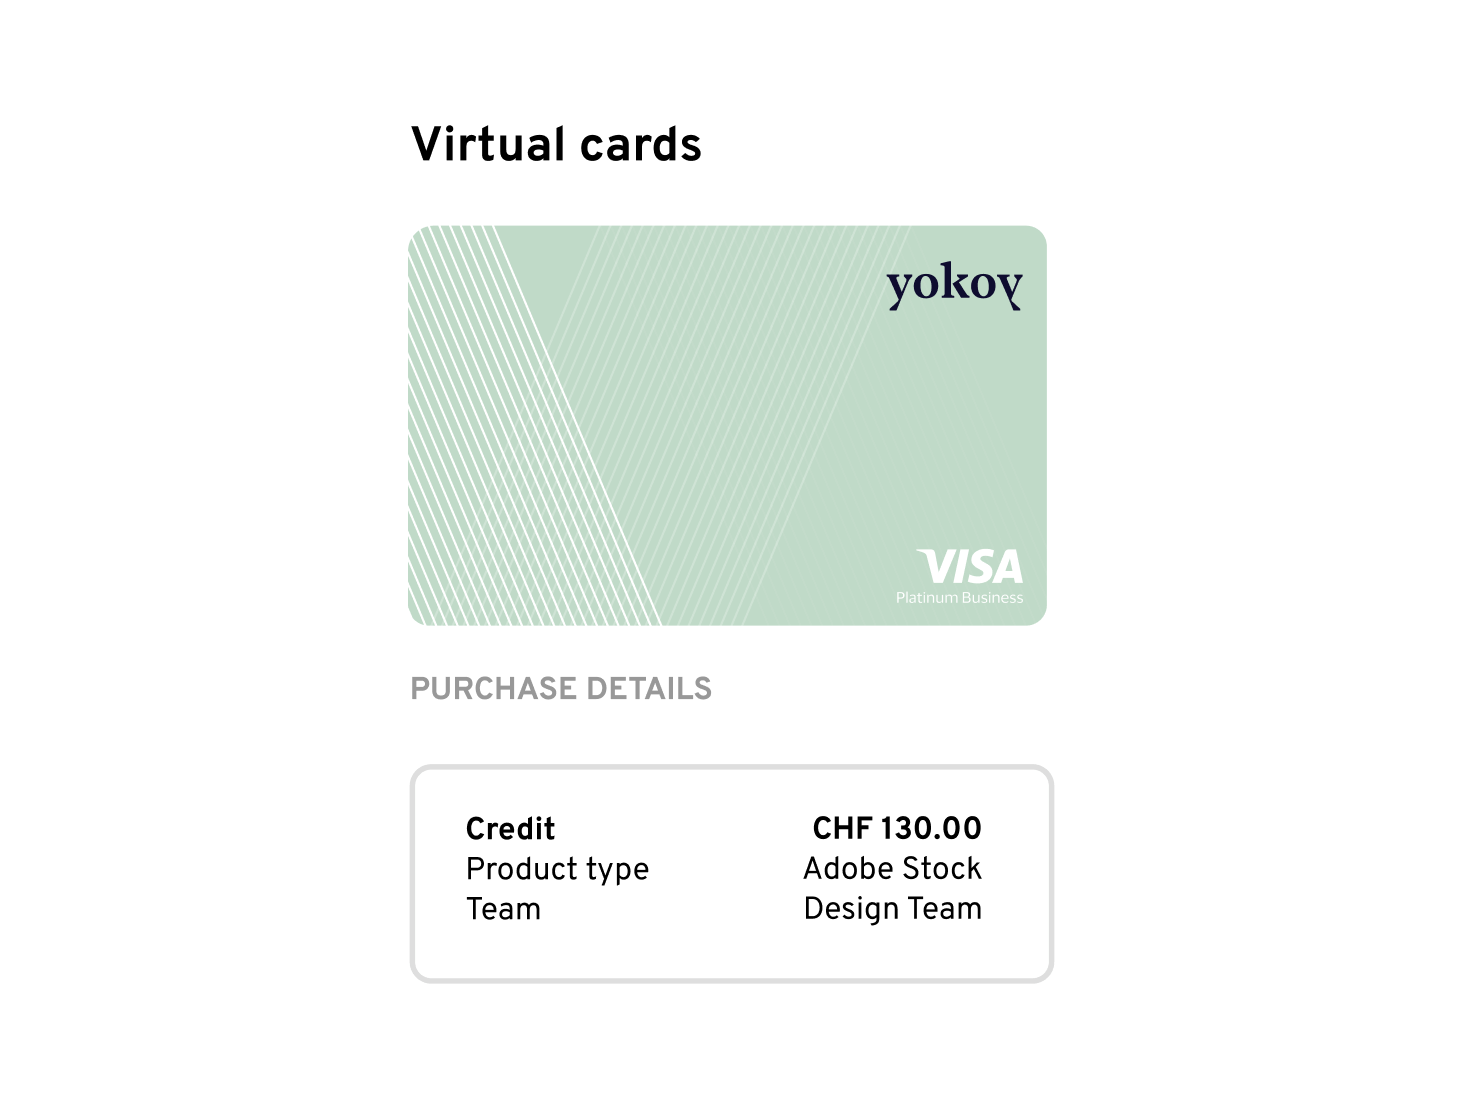 corporate-cards-virtual-visa-yokoy